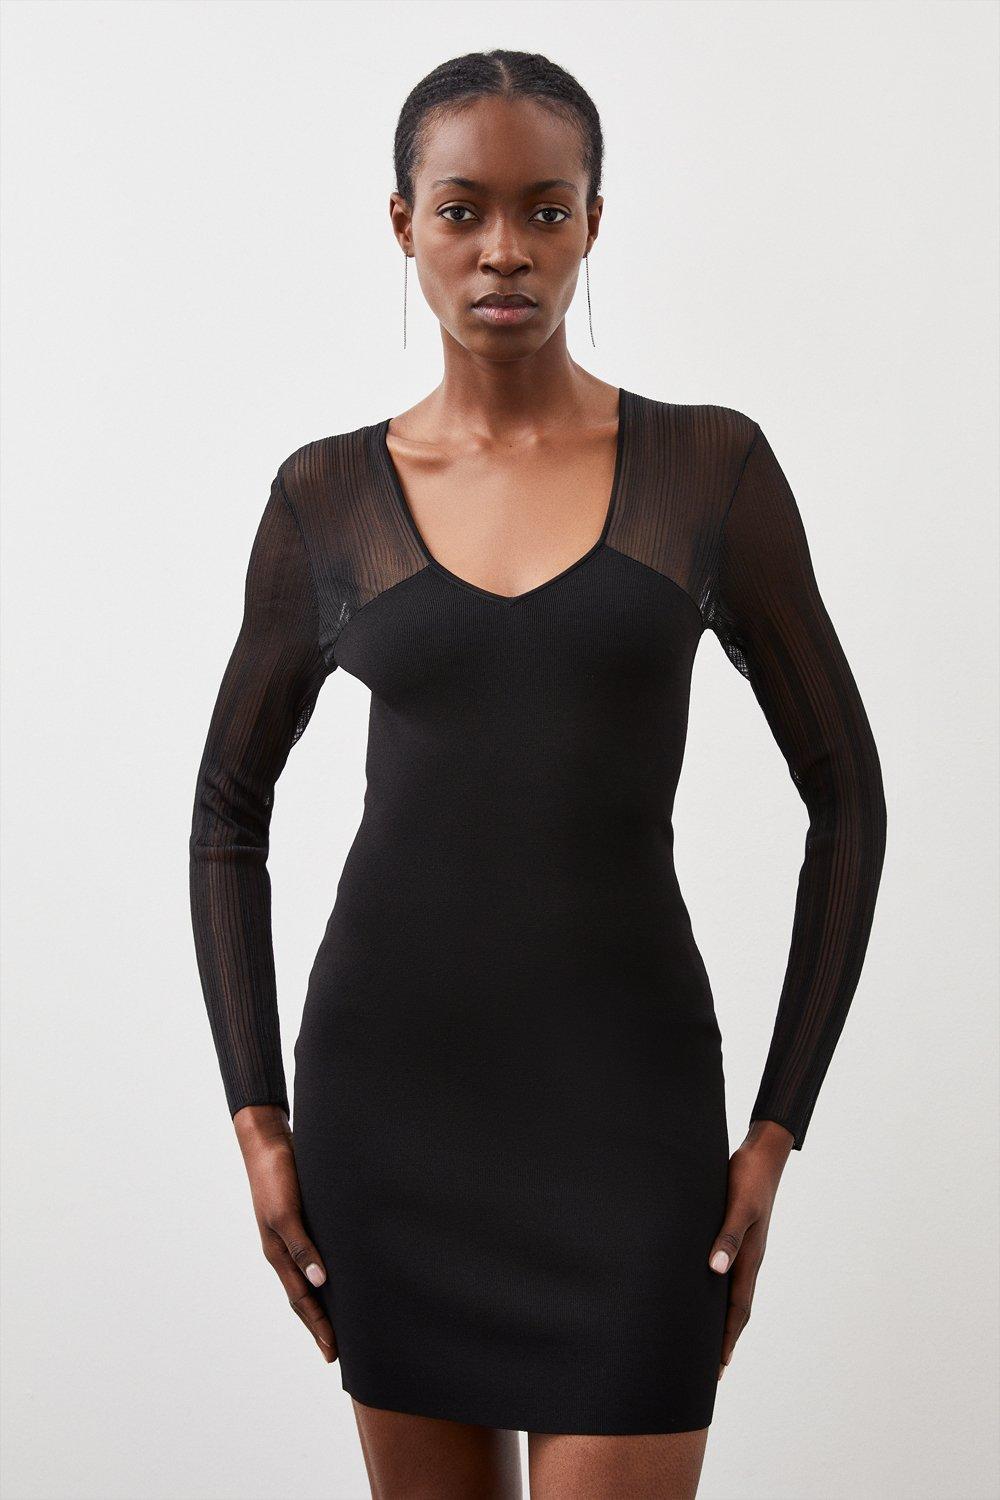 New Sweater Dress Women Hollow Out Knitted Dress Twist Pattern Bodycon Dress  | eBay